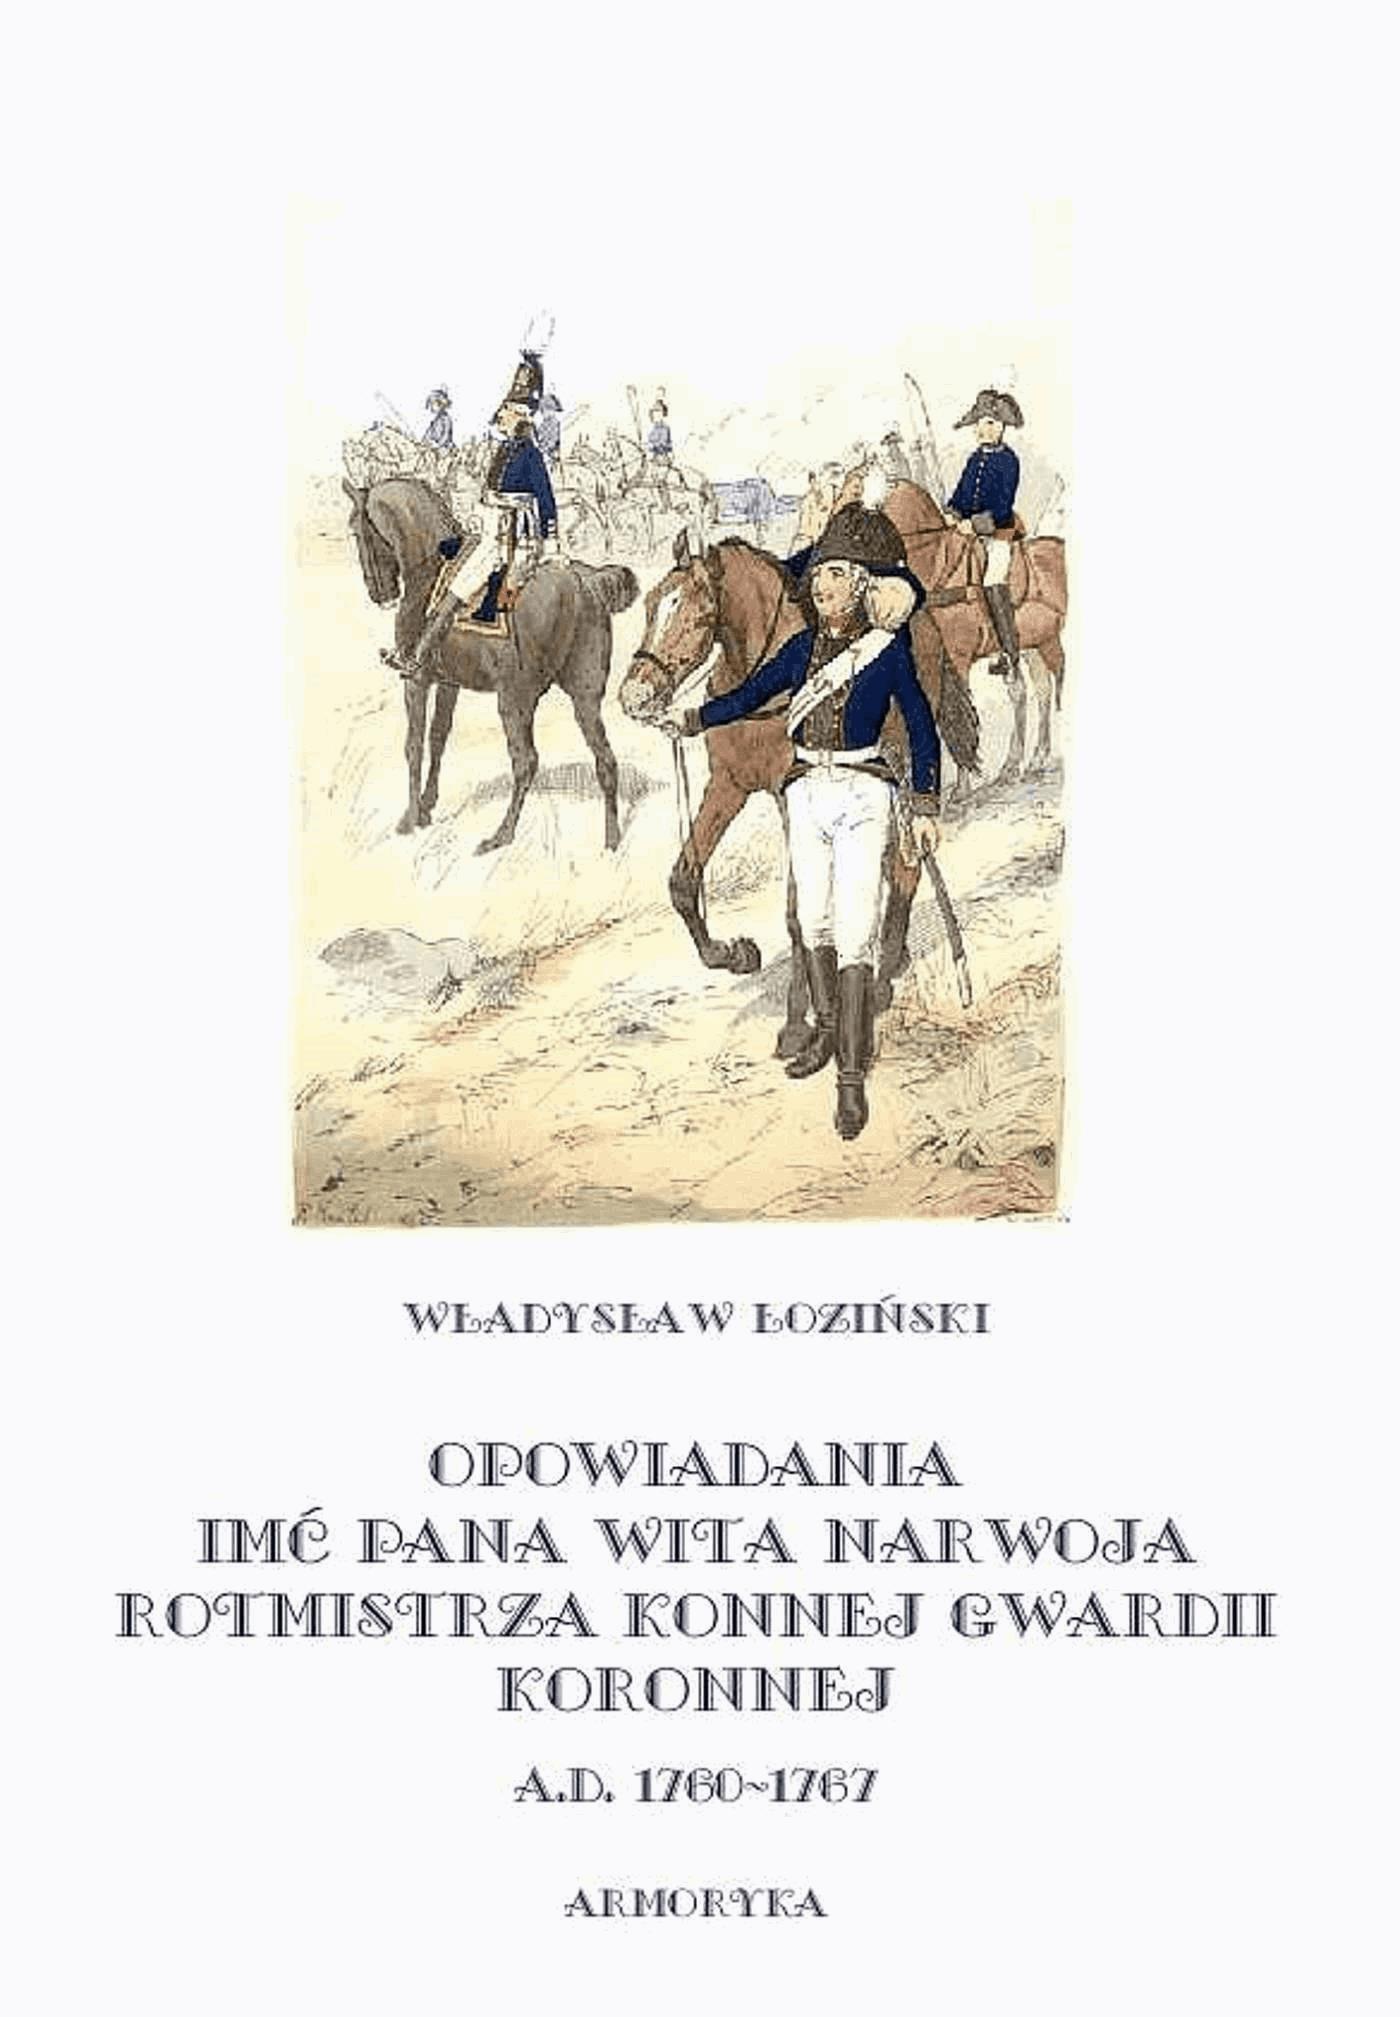 Okładka:Opowiadania imć pana Wita Narwoja, rotmistrza konnej gwardii koronnej A. D. 1760-1767 